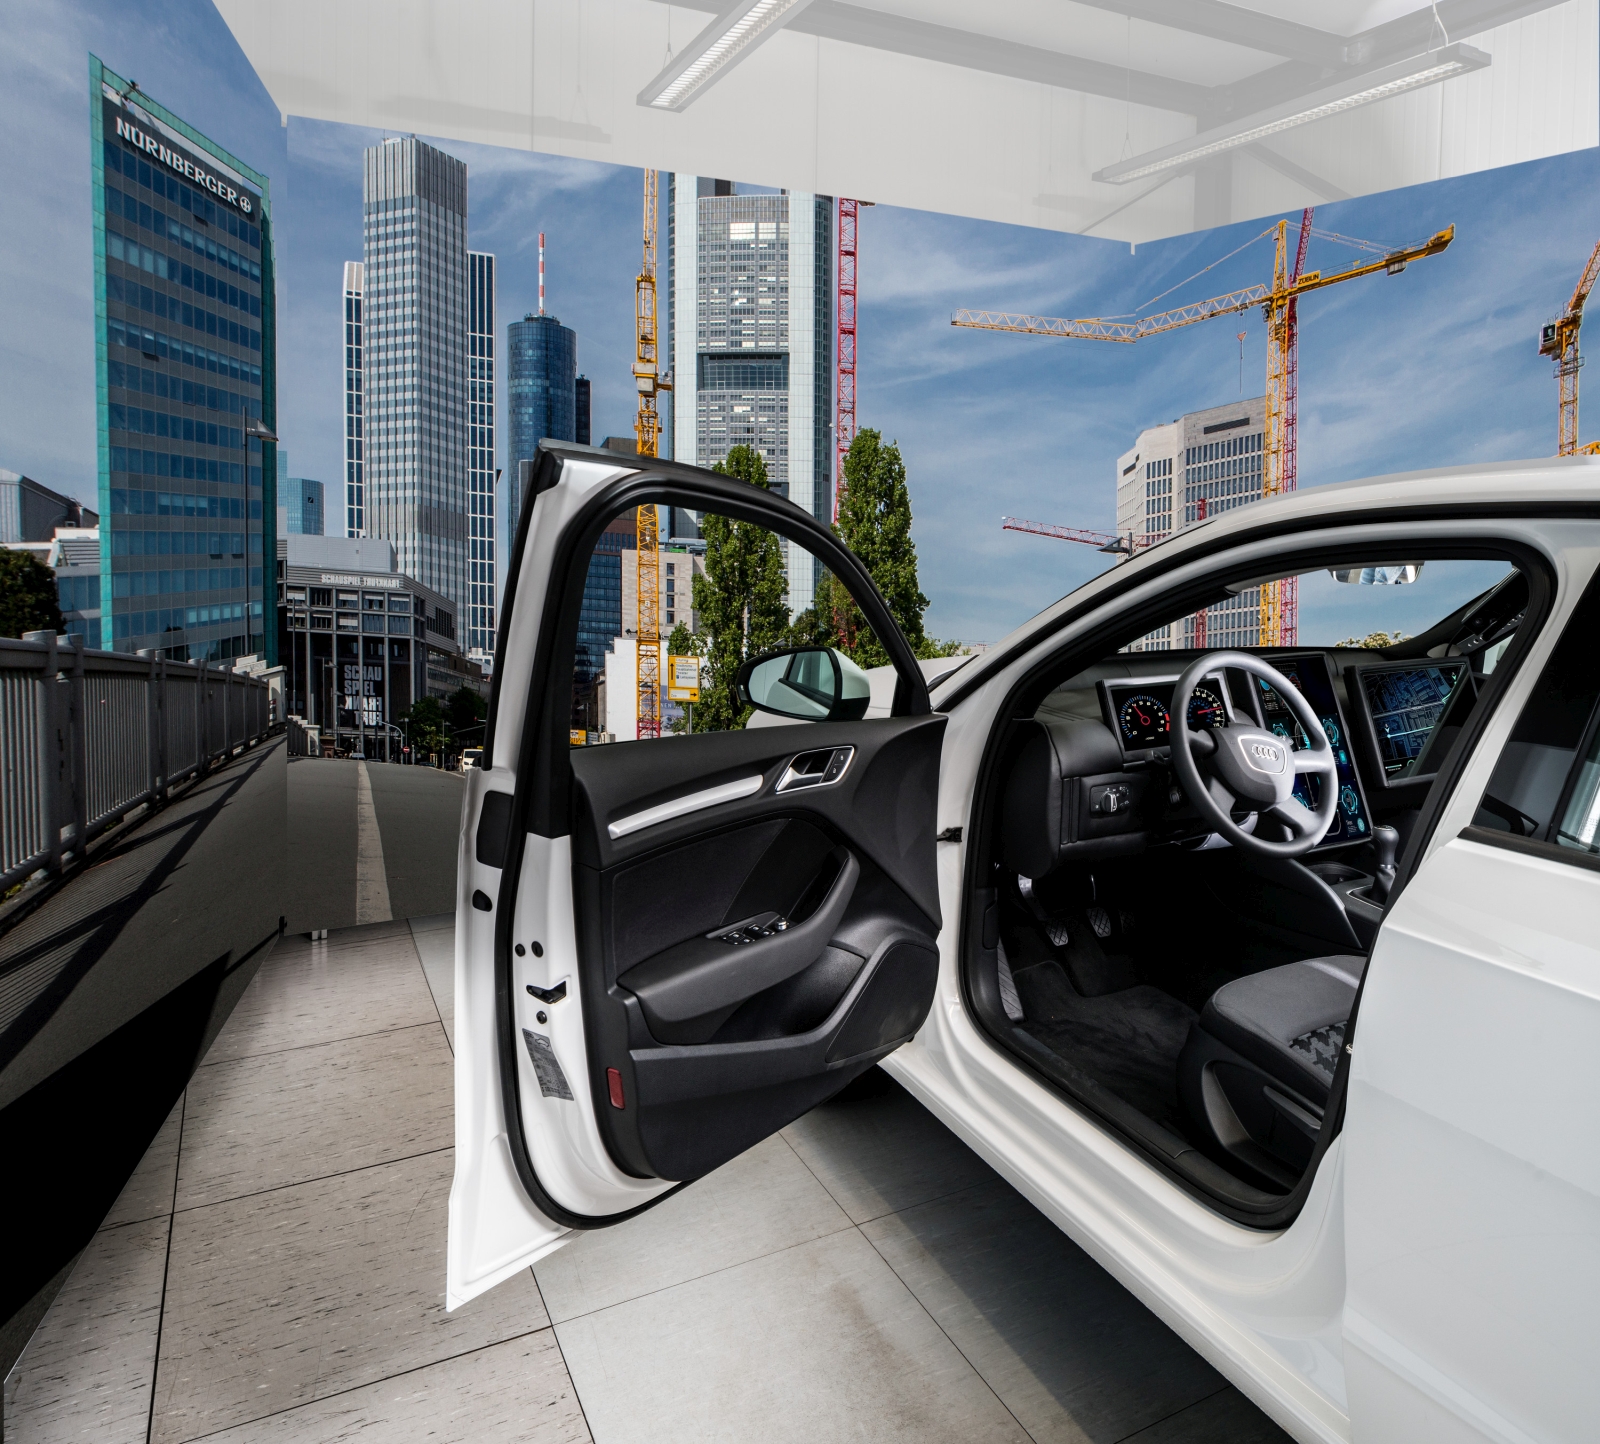 Zur Durchführung von Studien und Datensammlungen bietet das Fraunhofer IOSB einen Fahrsimulator mit umfangreicher Sensorik im Fahrzeuginnenraum.